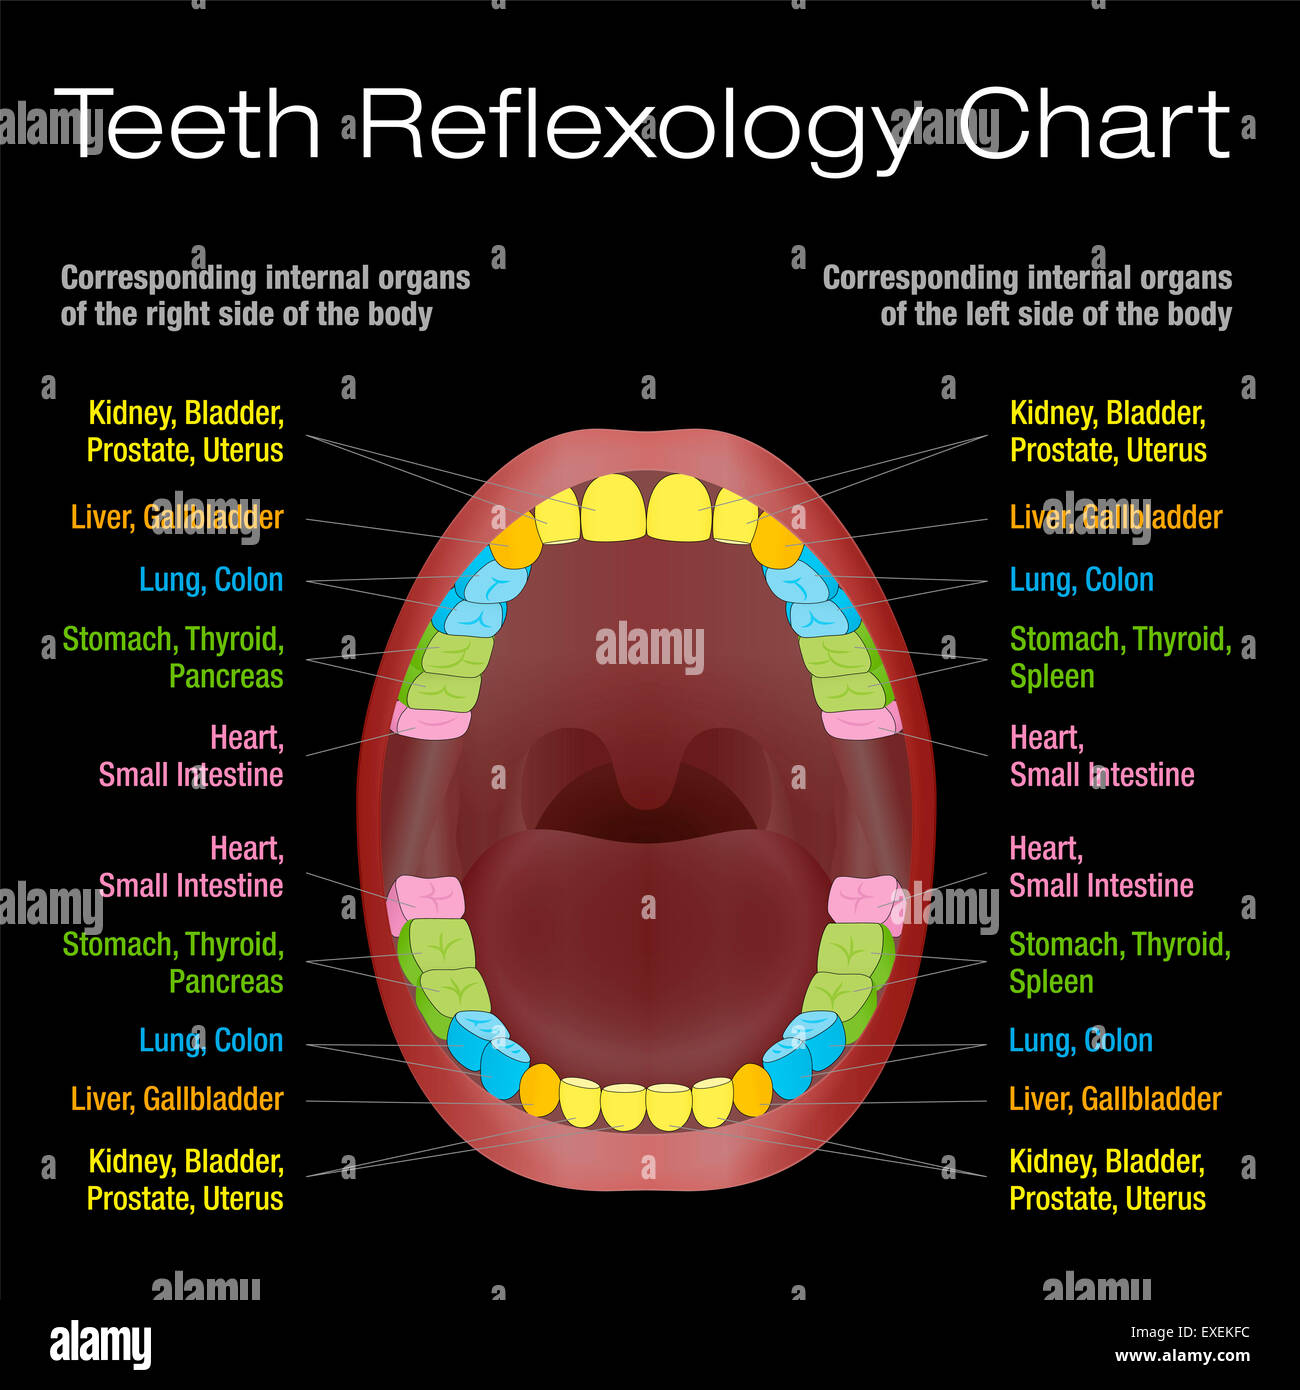 Denti riflessologia chart - alternativa salute dentale Cura dei denti permanenti e i loro corrispondenti organi interni. Foto Stock